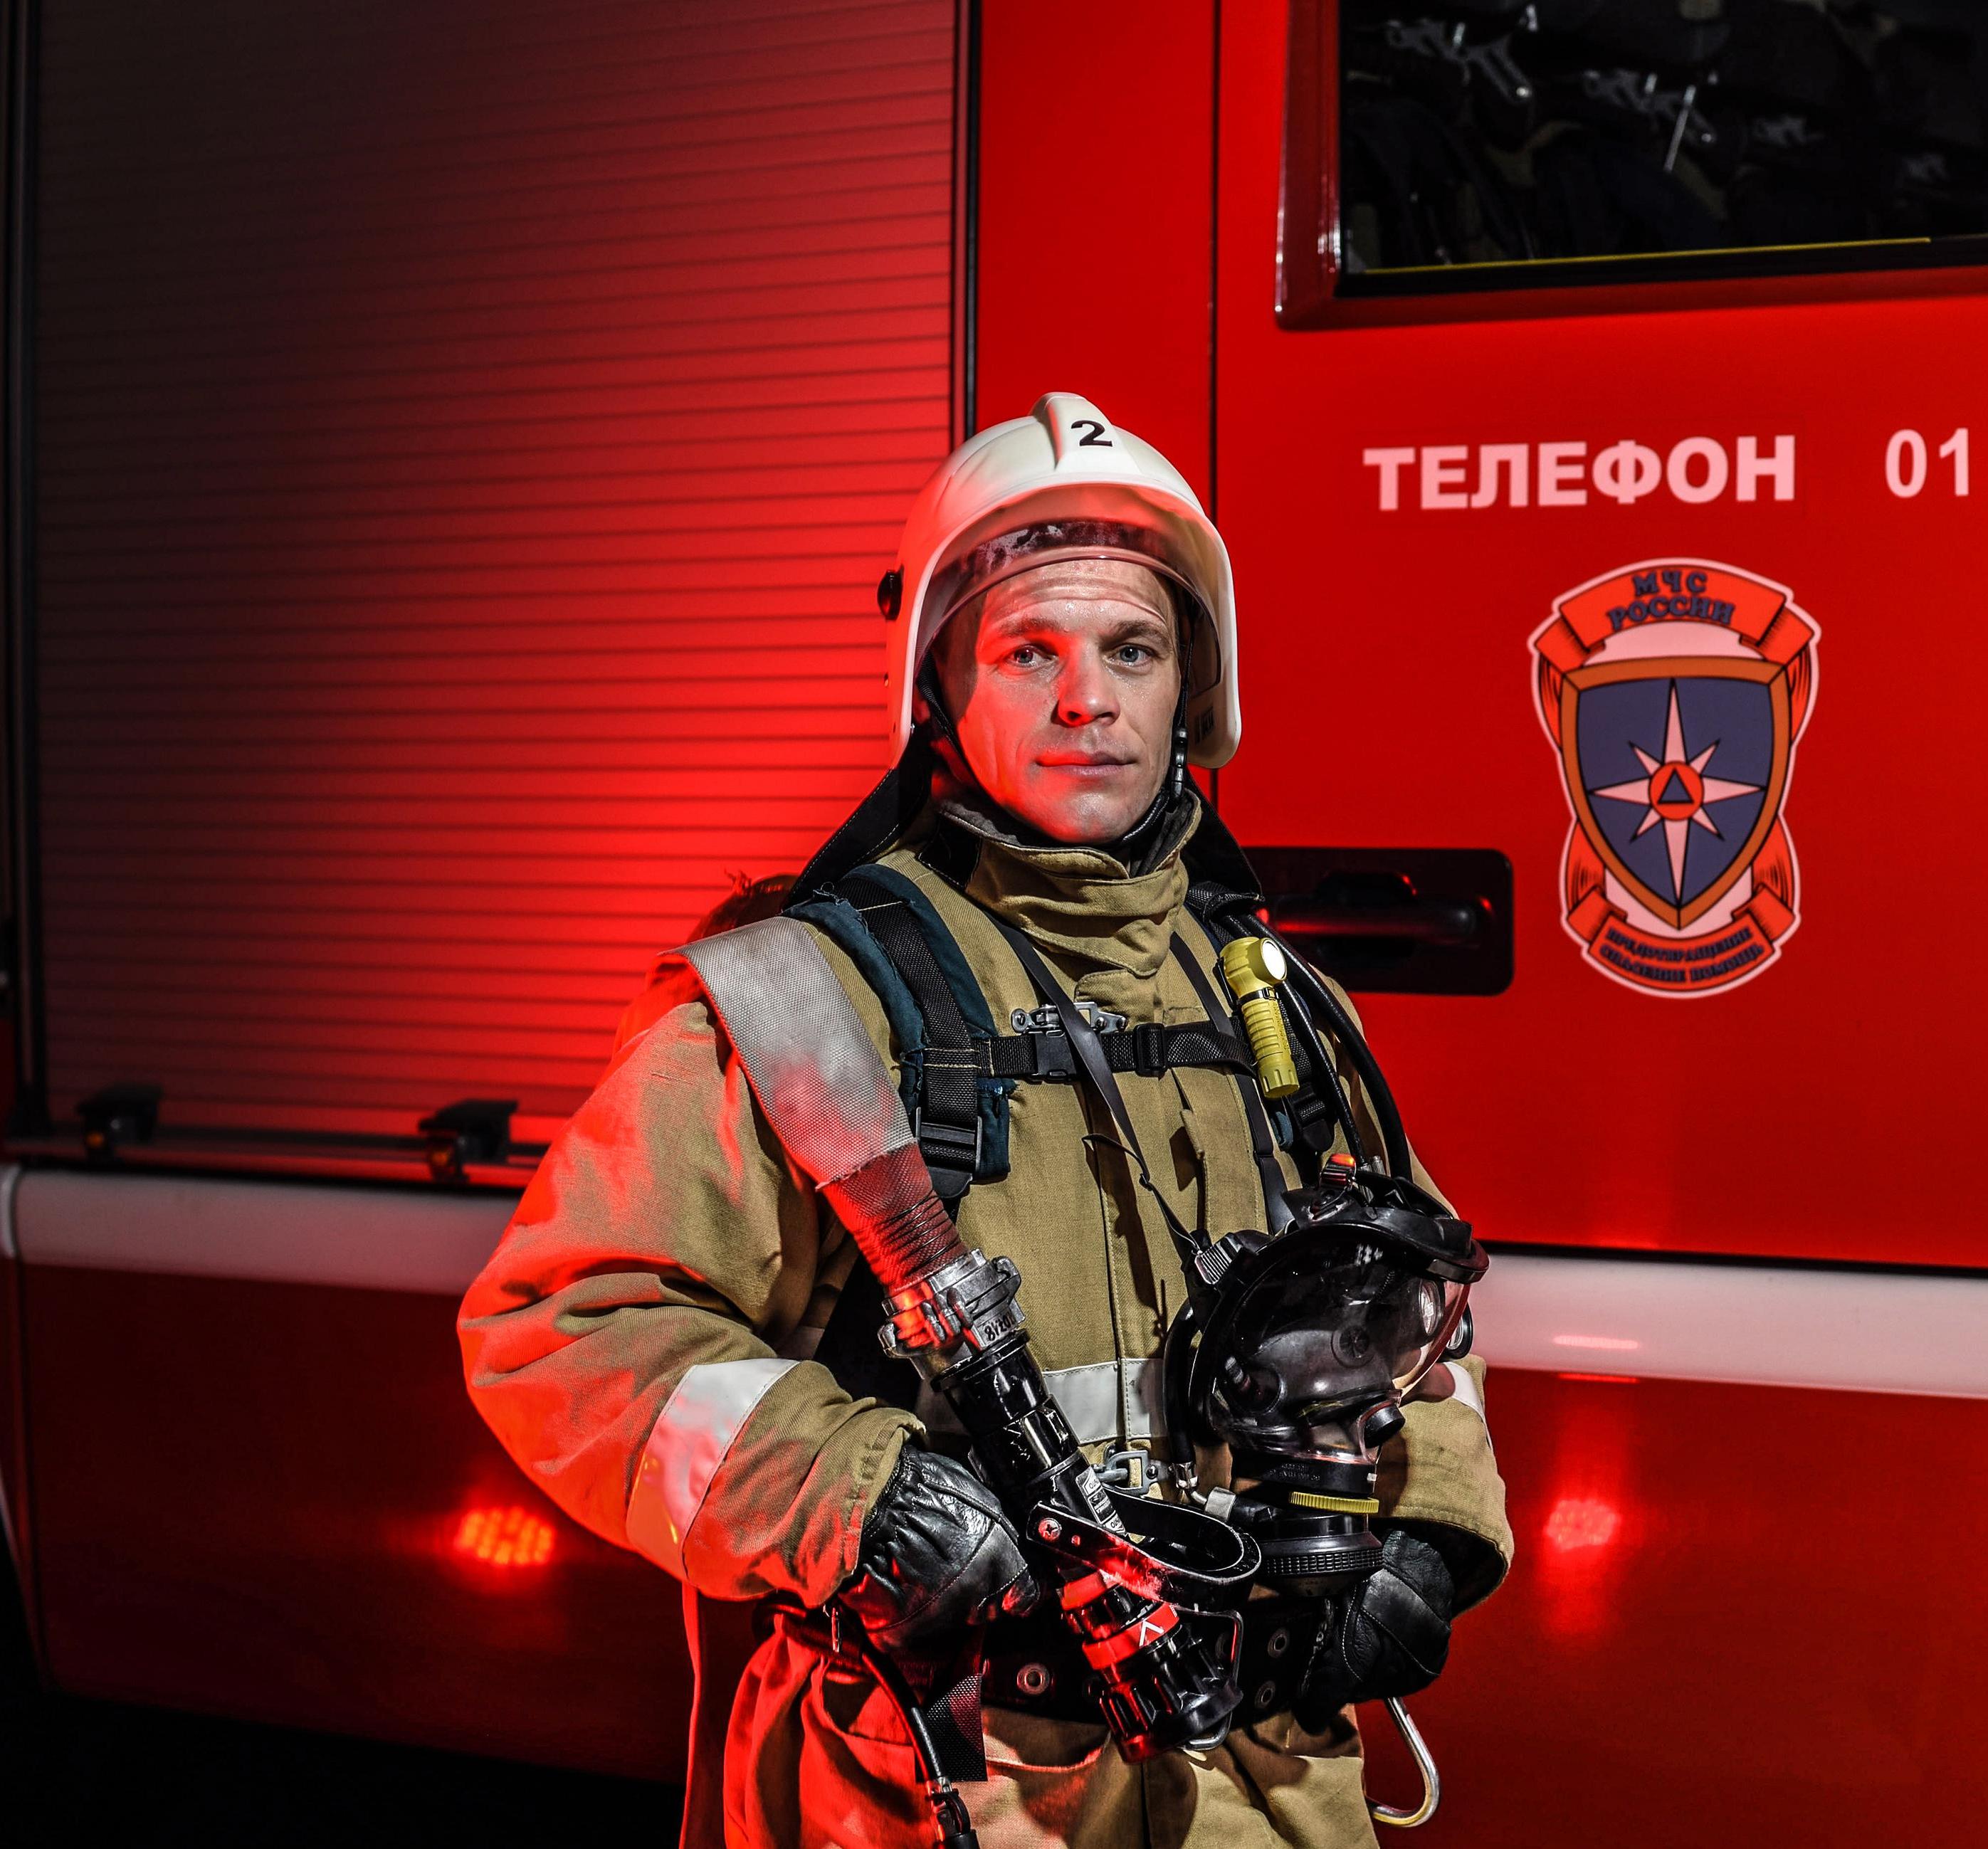 Необходимость профессионального обучения в сфере пожарной безопасности